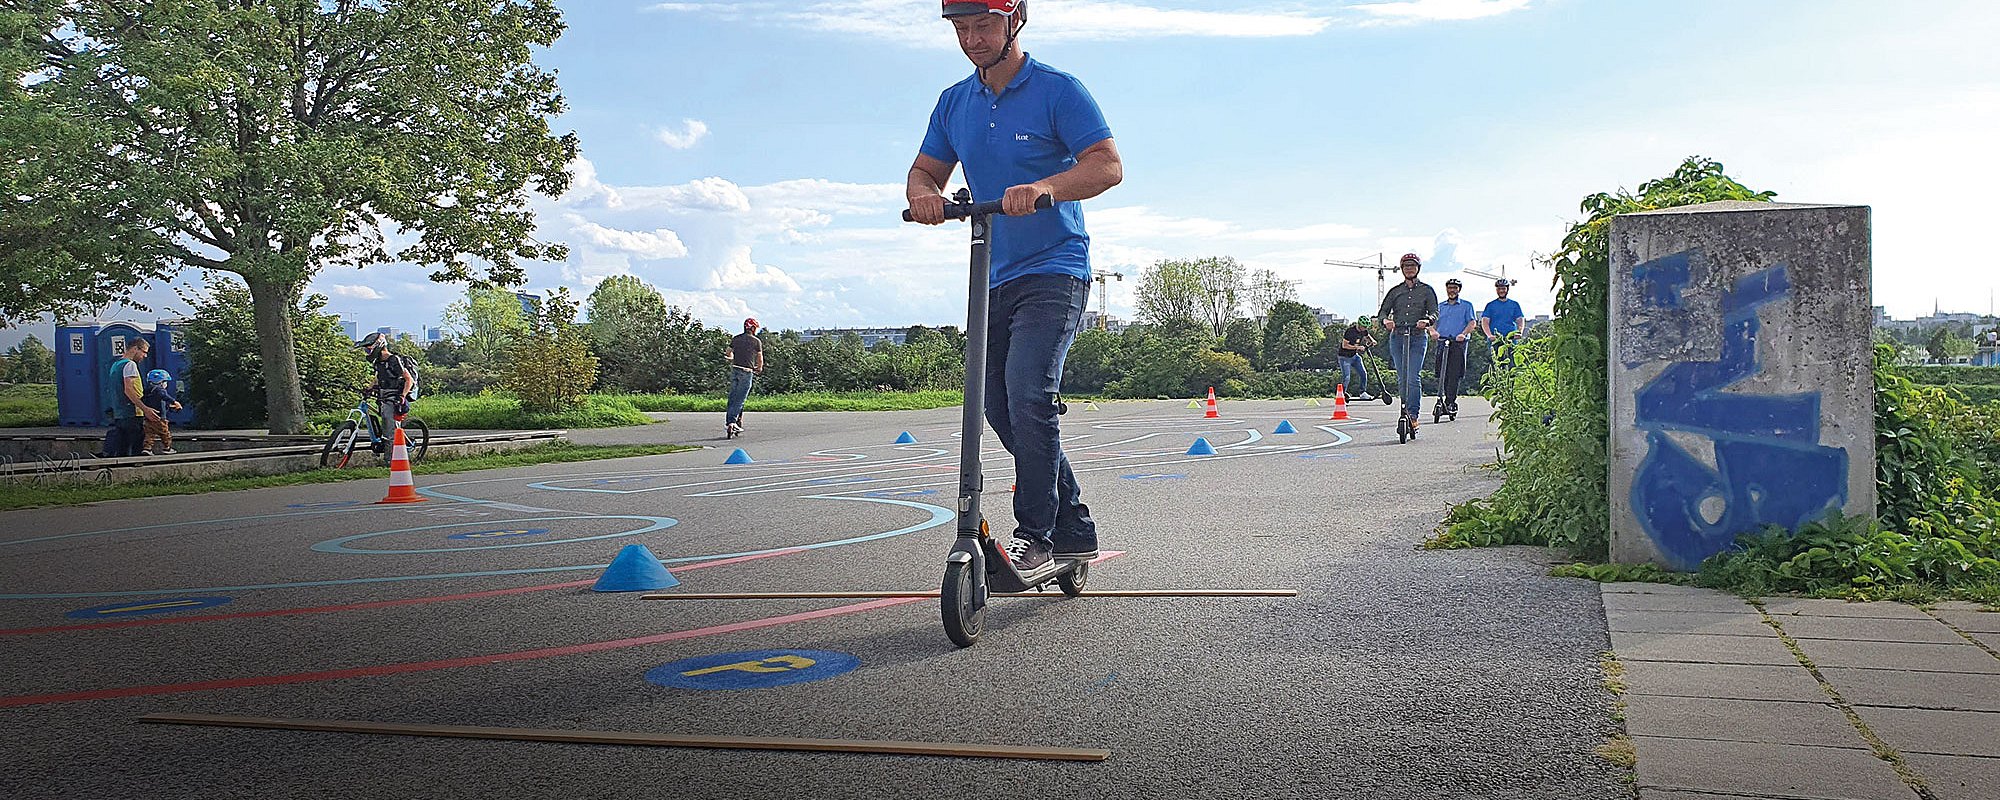 Foto: Erwachsene auf einem asphaltierten Übungsparcours für E-Scooter auf der Donauinsel in Wien